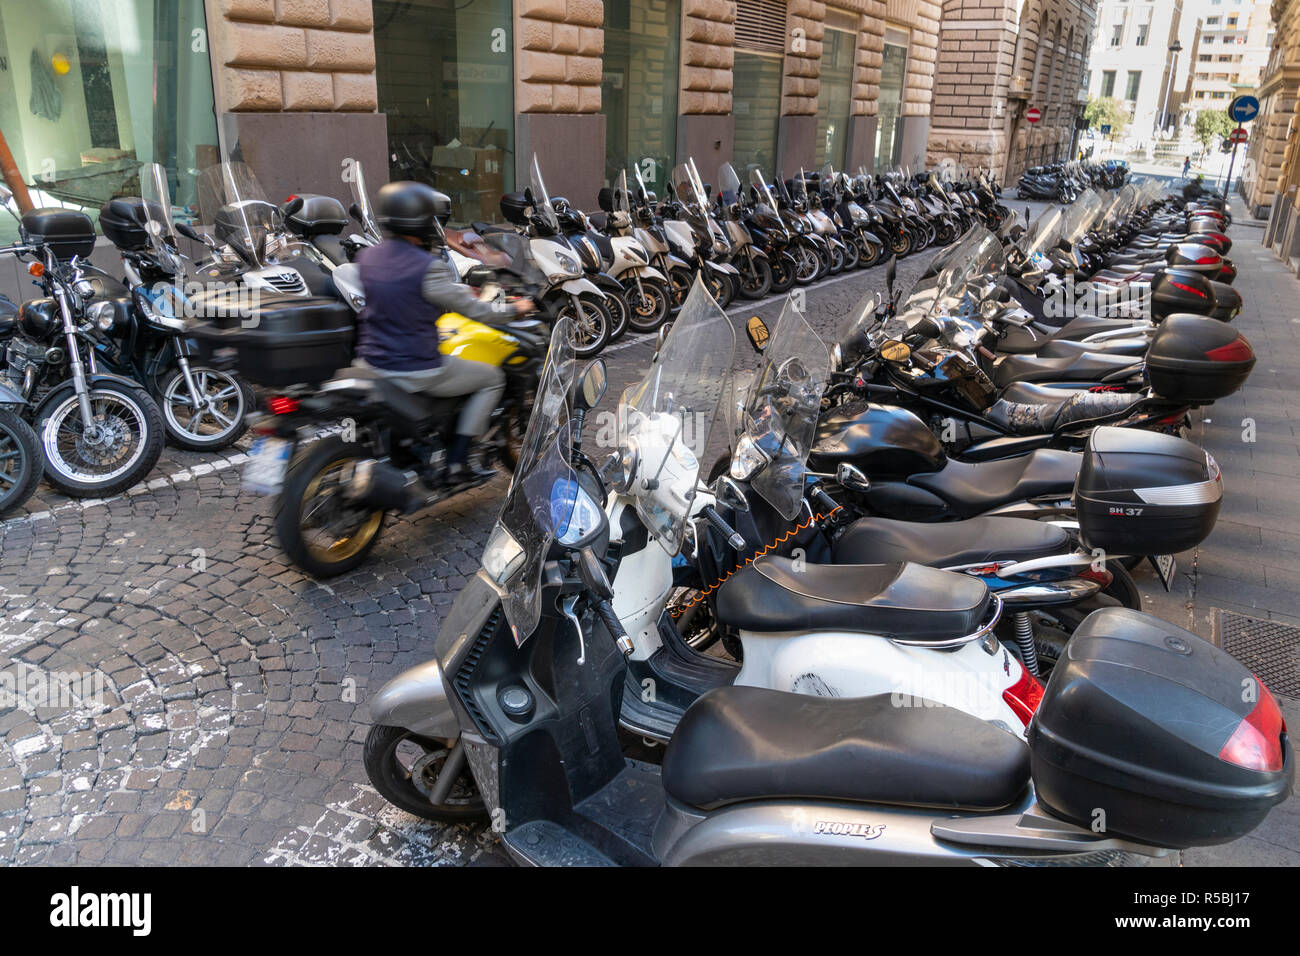 Reihen von Roller und Motorräder, das beliebteste Verkehrsmittel in Neapel, in einer ruhigen Straße im Zentrum der Stadt, Neapel, Italien geparkt. Stockfoto